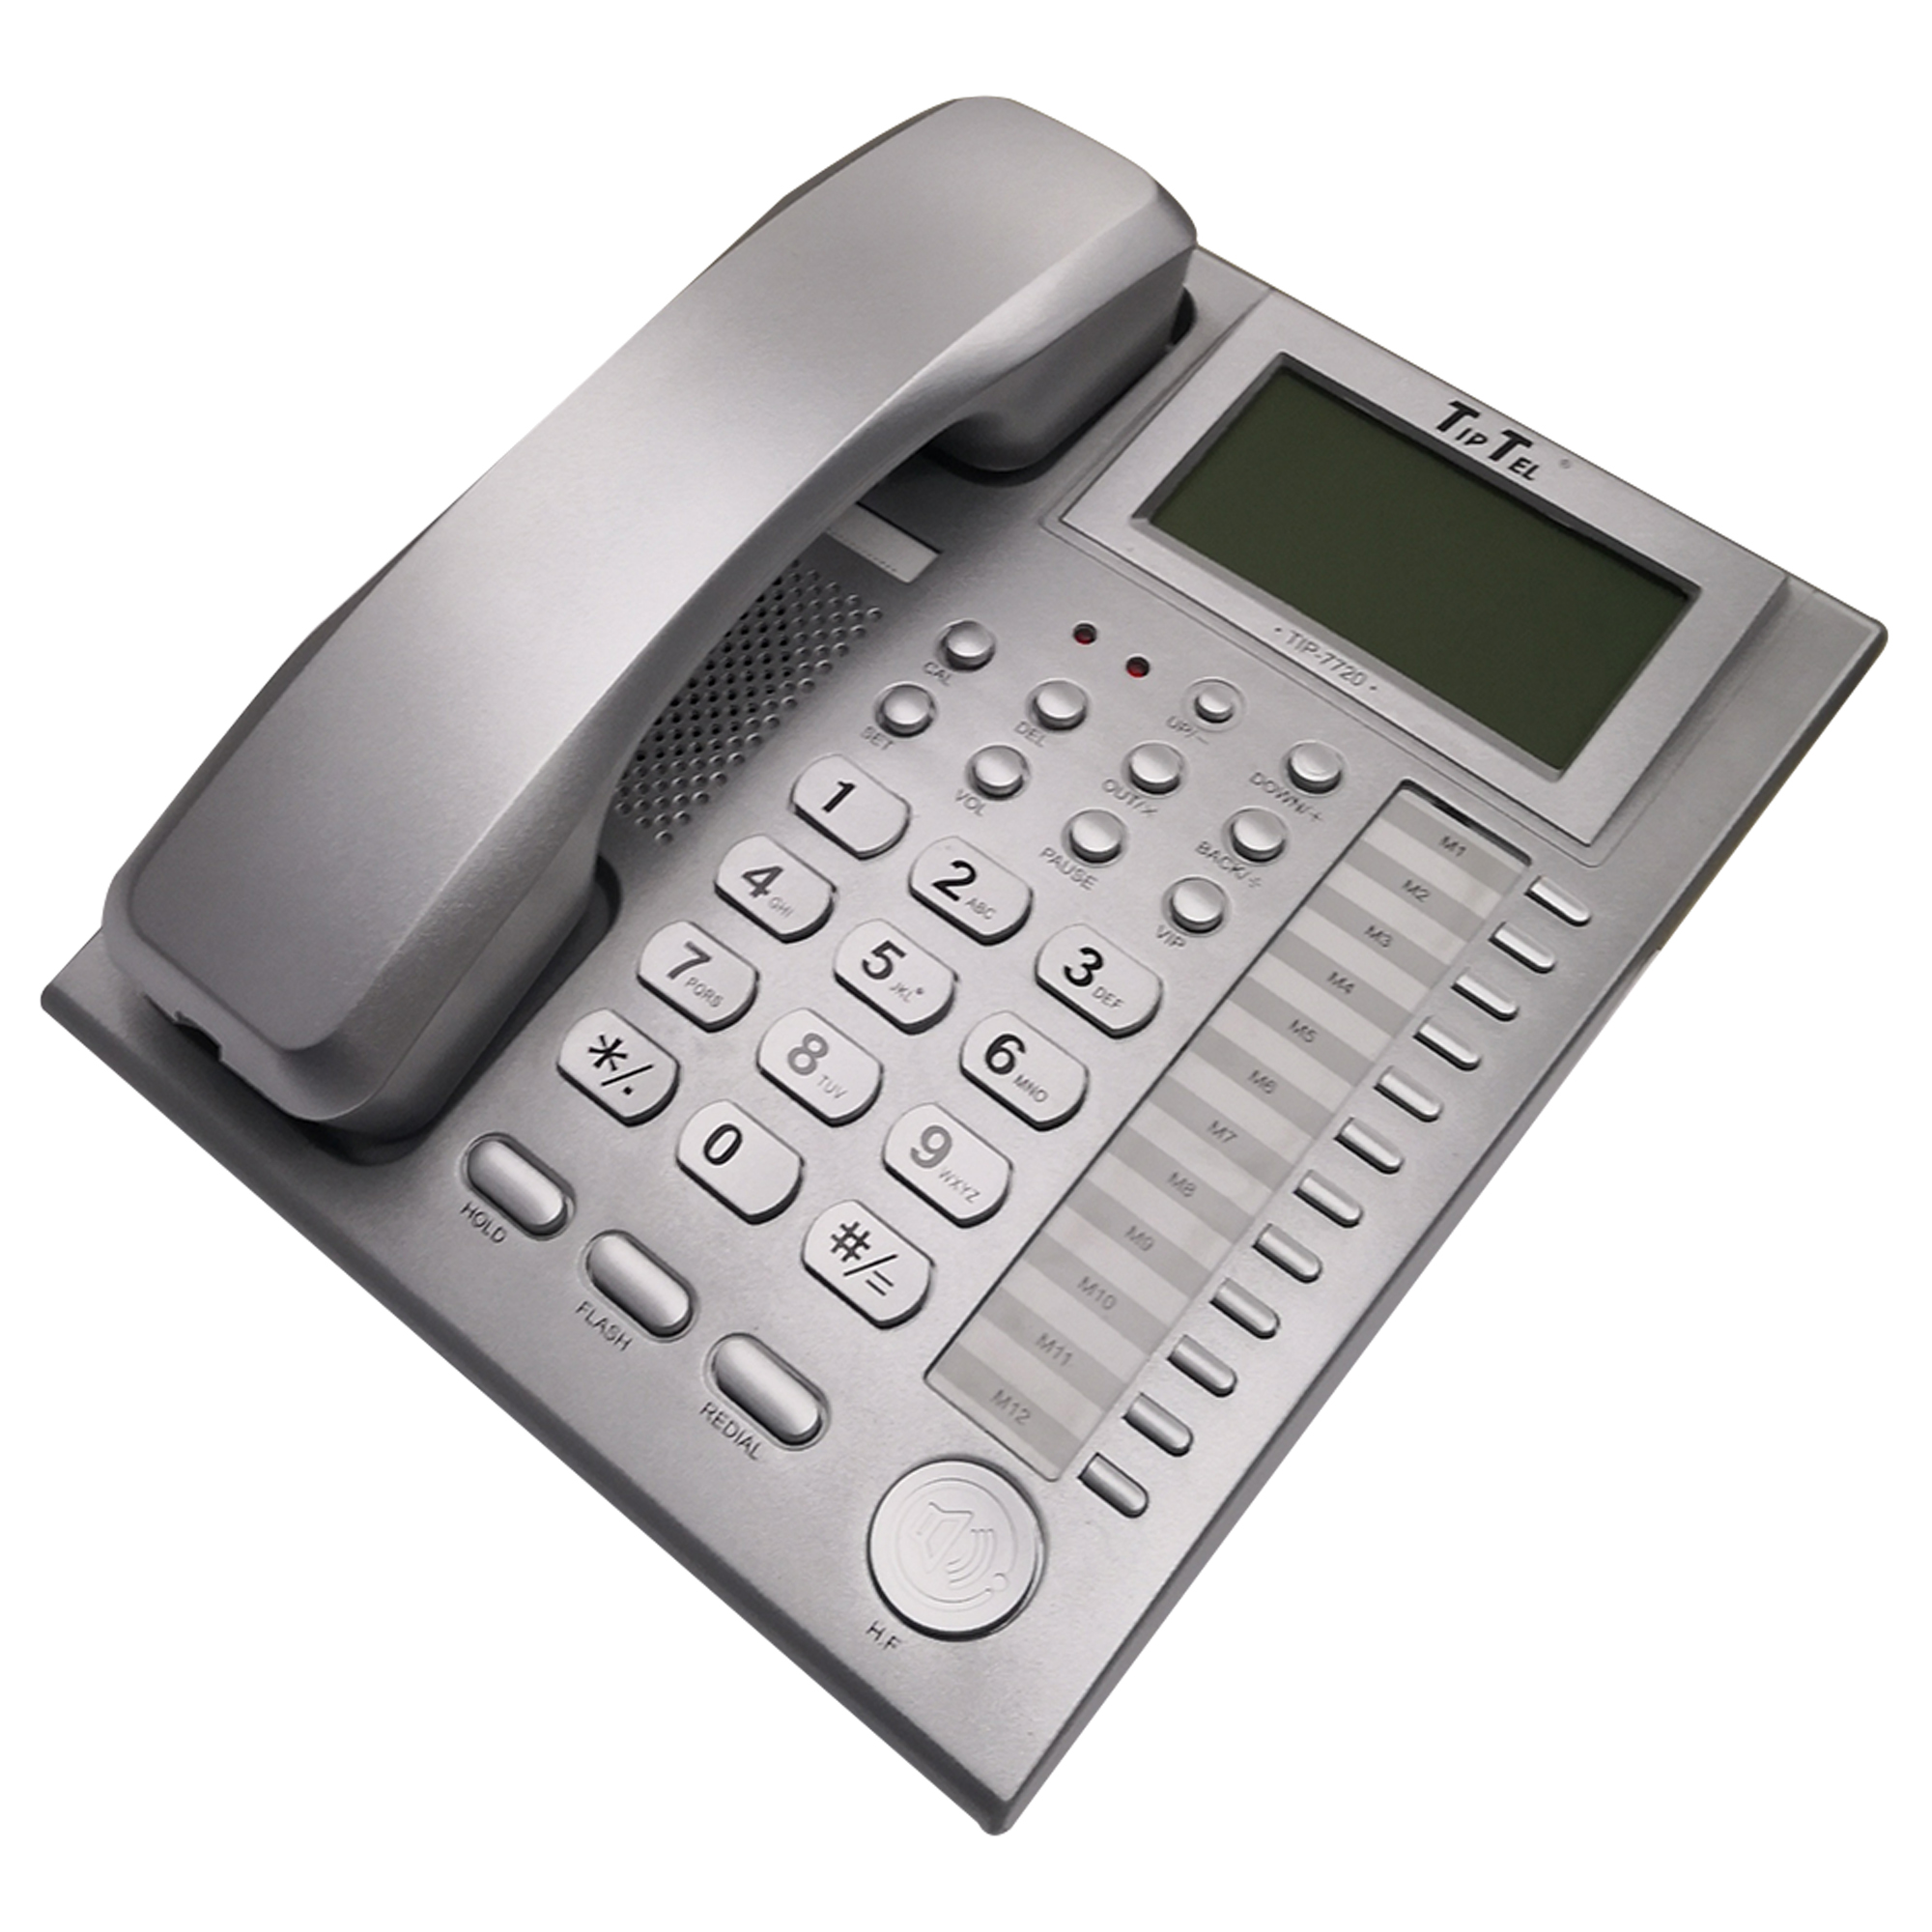 نکته خرید - قیمت روز تلفن تیپ تل مدل TIP-7720 خرید